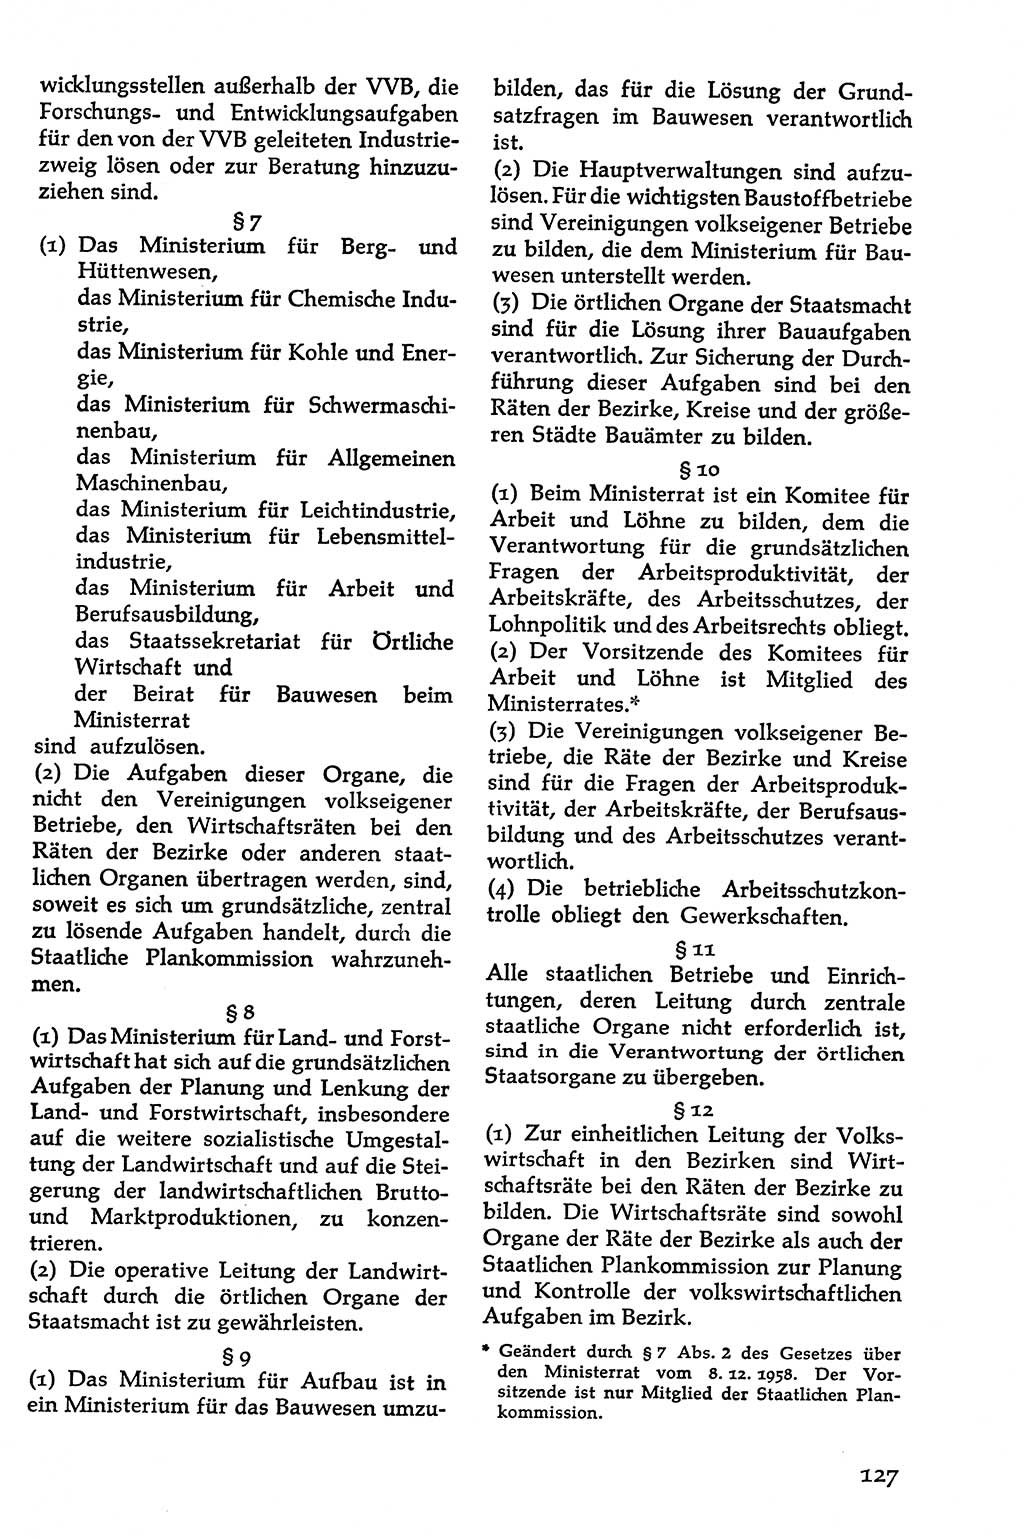 Volksdemokratische Ordnung in Mitteldeutschland [Deutsche Demokratische Republik (DDR)], Texte zur verfassungsrechtlichen Situation 1963, Seite 127 (Volksdem. Ordn. Md. DDR 1963, S. 127)